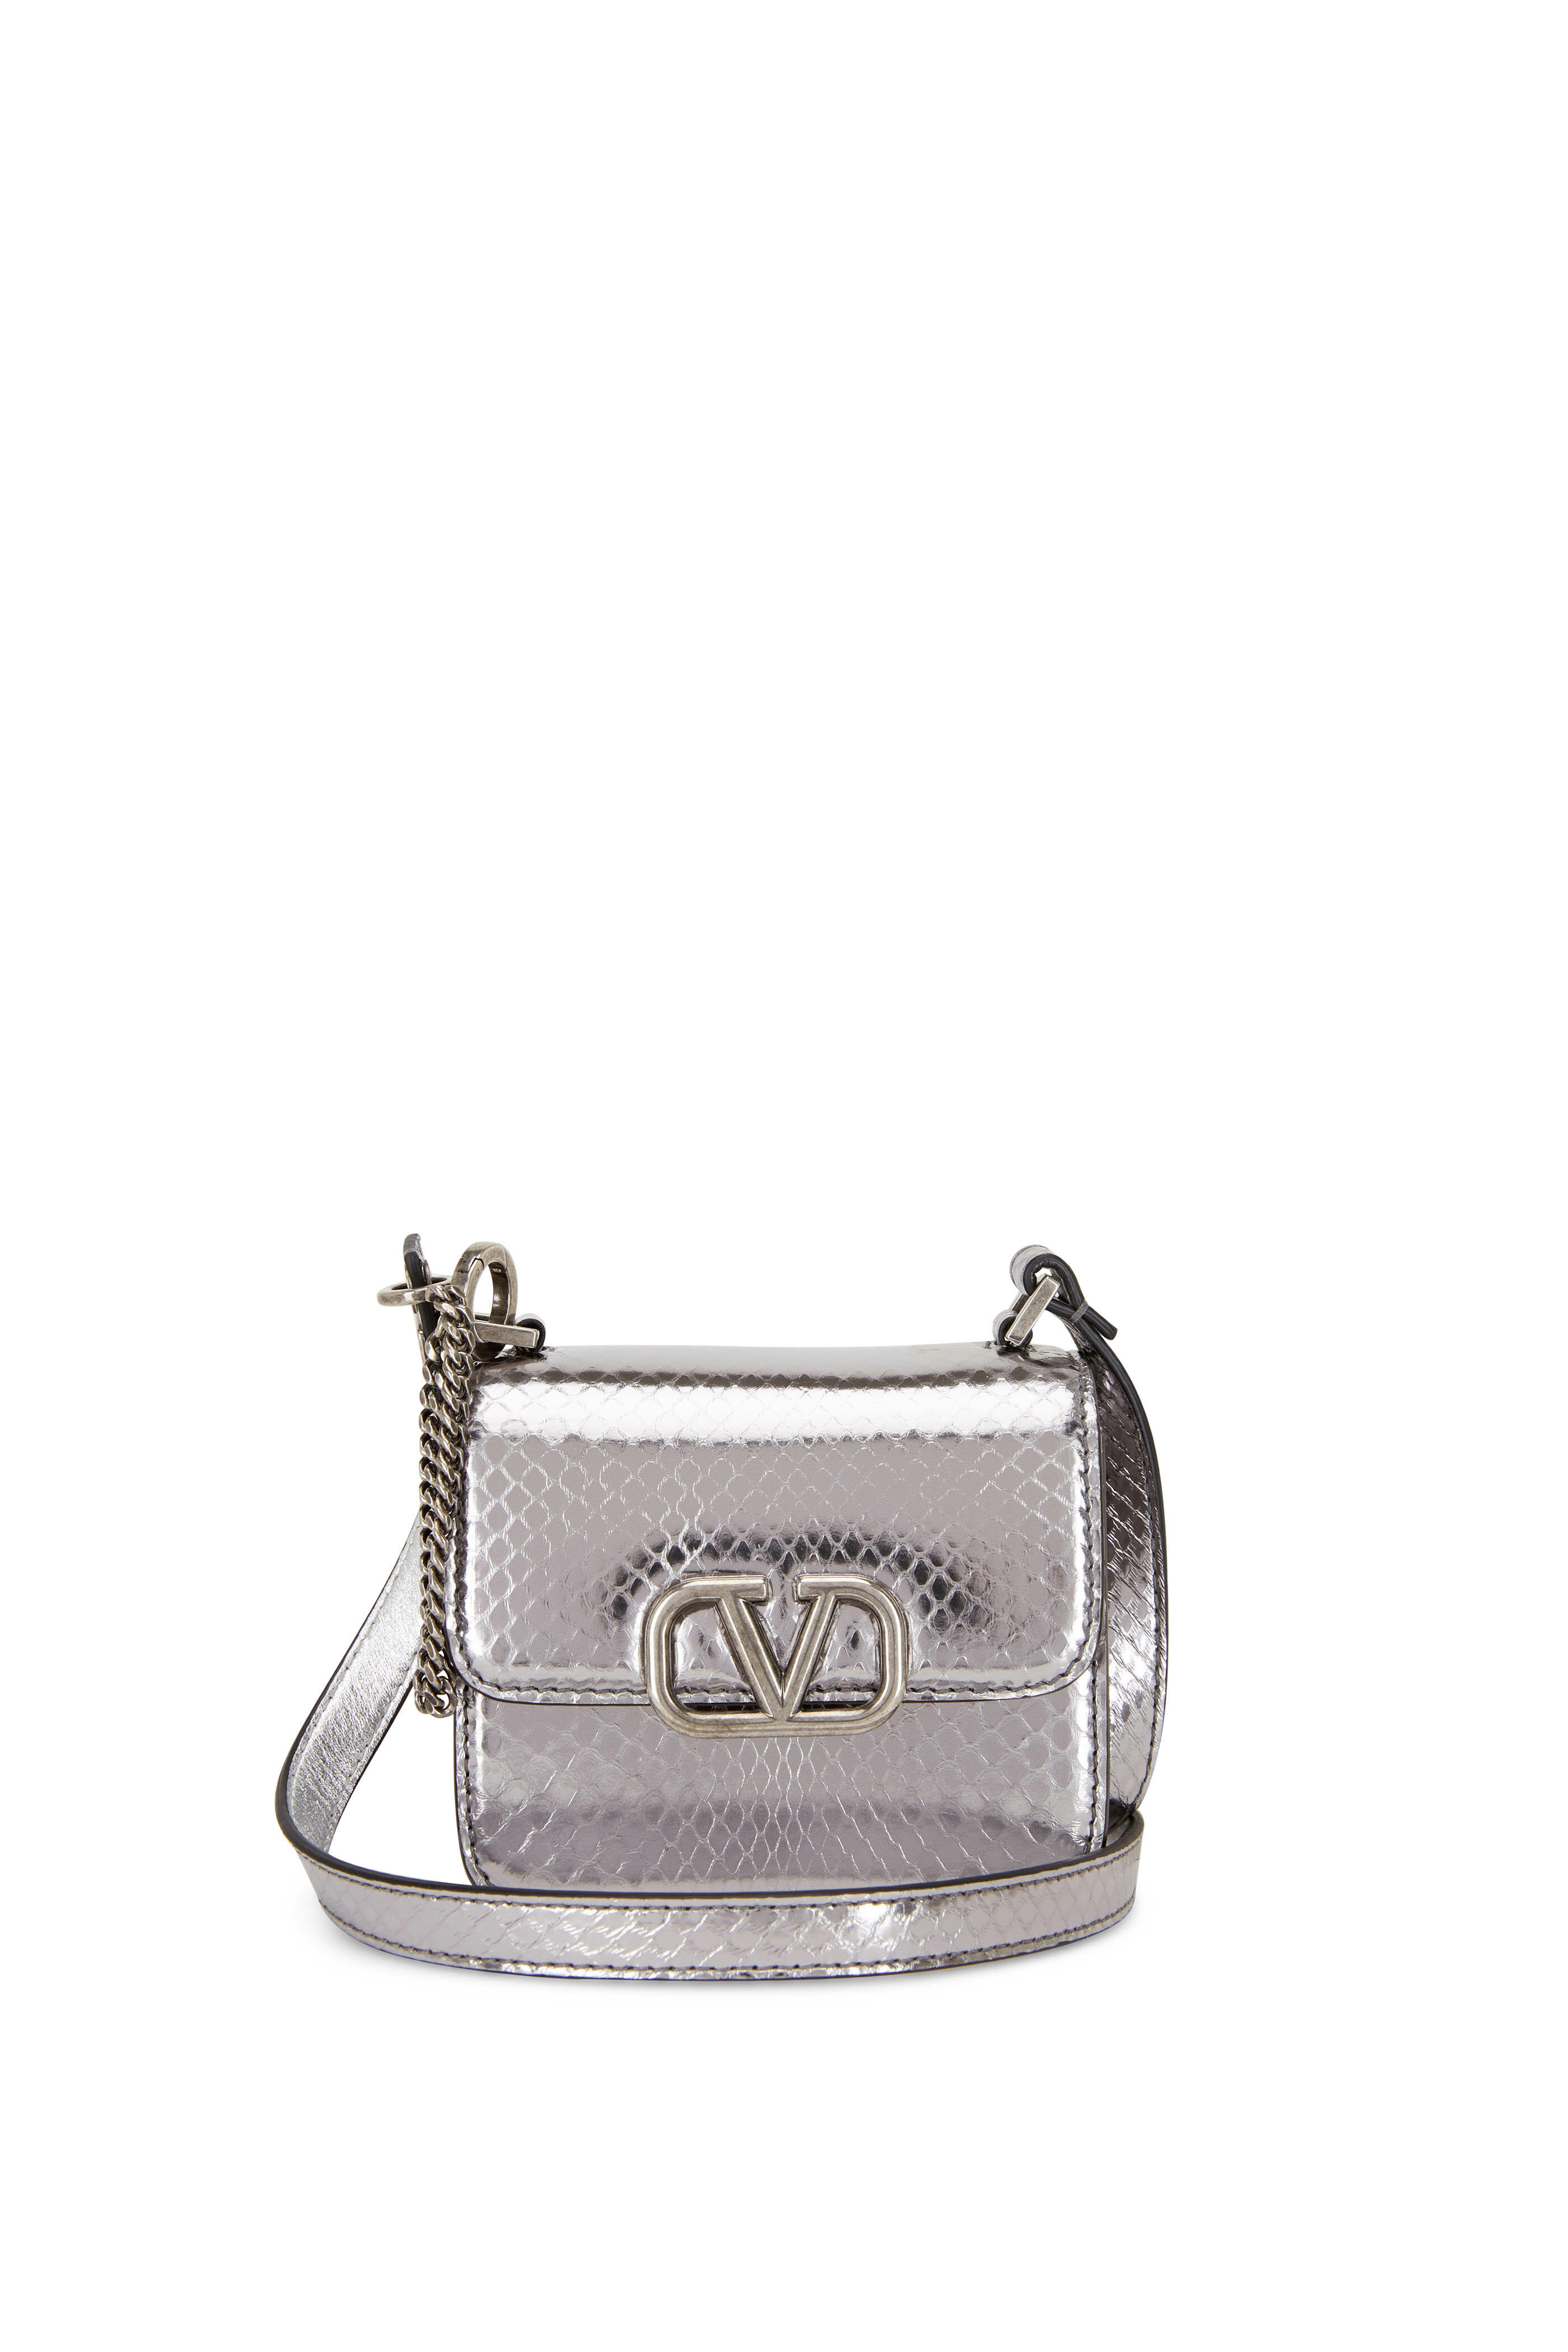 Valentino Garavani VSling Micro Leather Bag